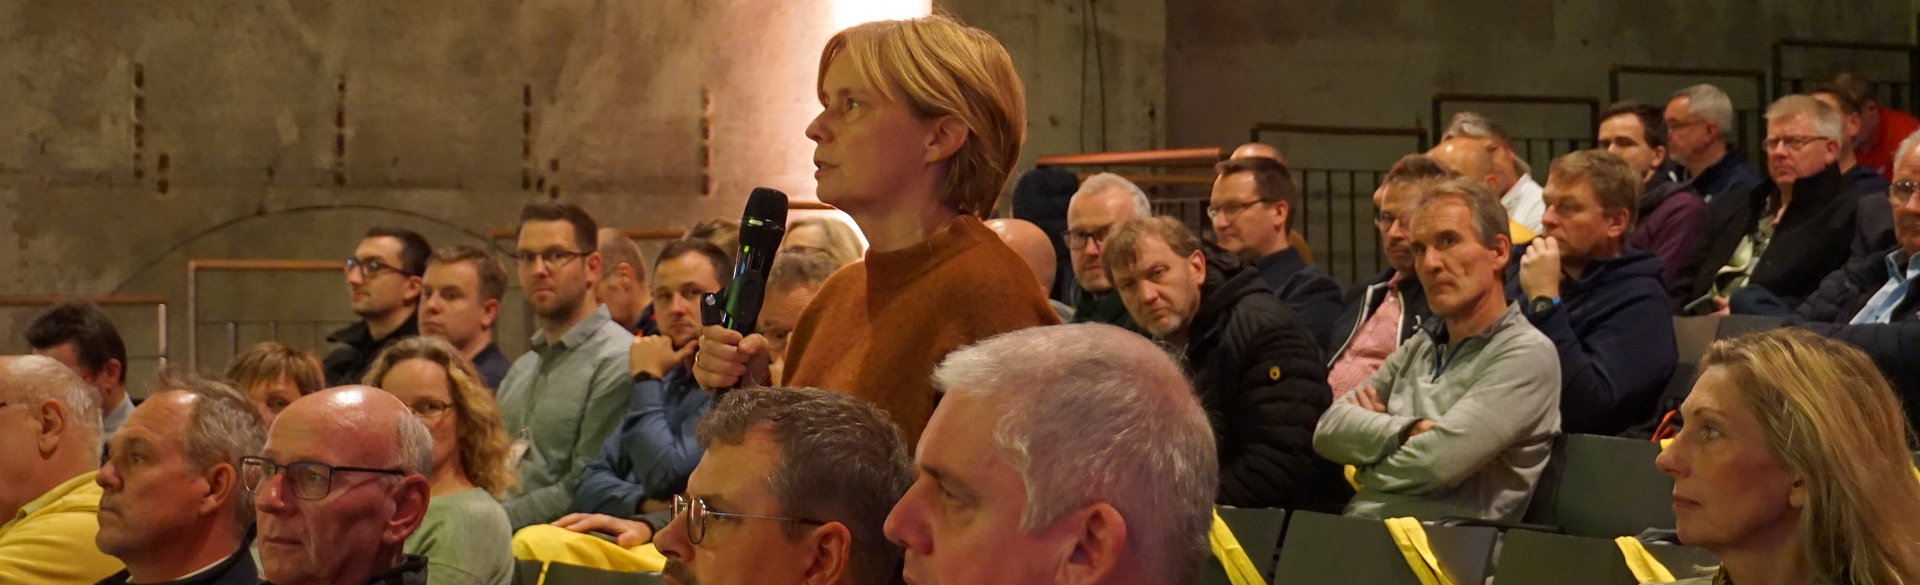 Eine Frau steht mit Mikrofon in einer sitzenden Zuschauermenge und spricht. 